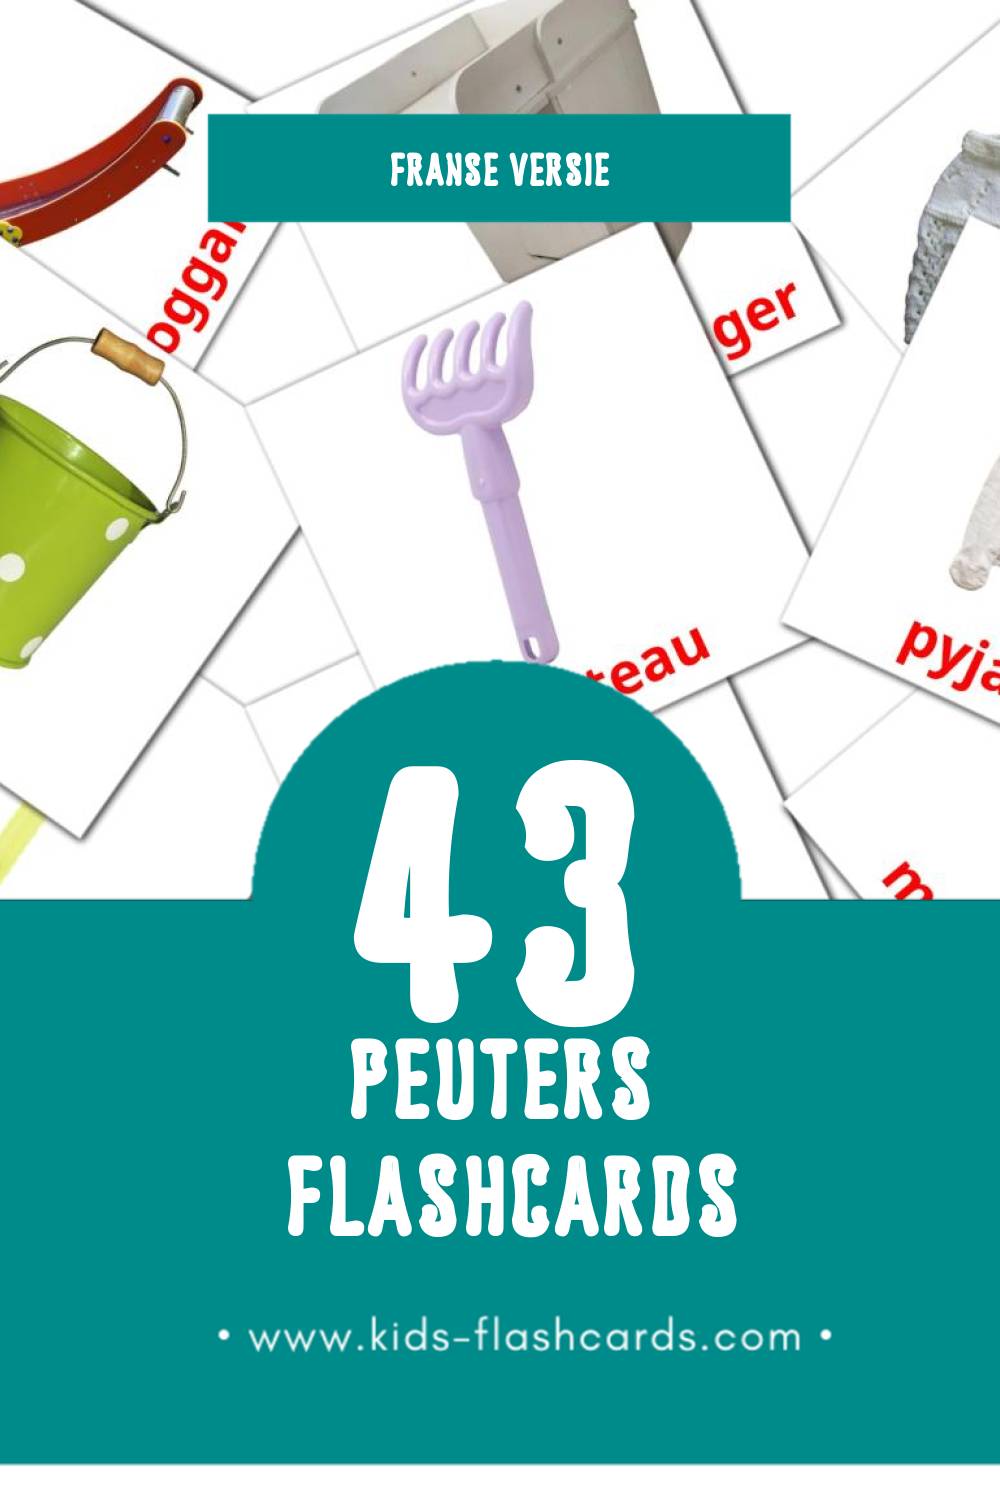 Visuele Bébé Flashcards voor Kleuters (43 kaarten in het Frans)